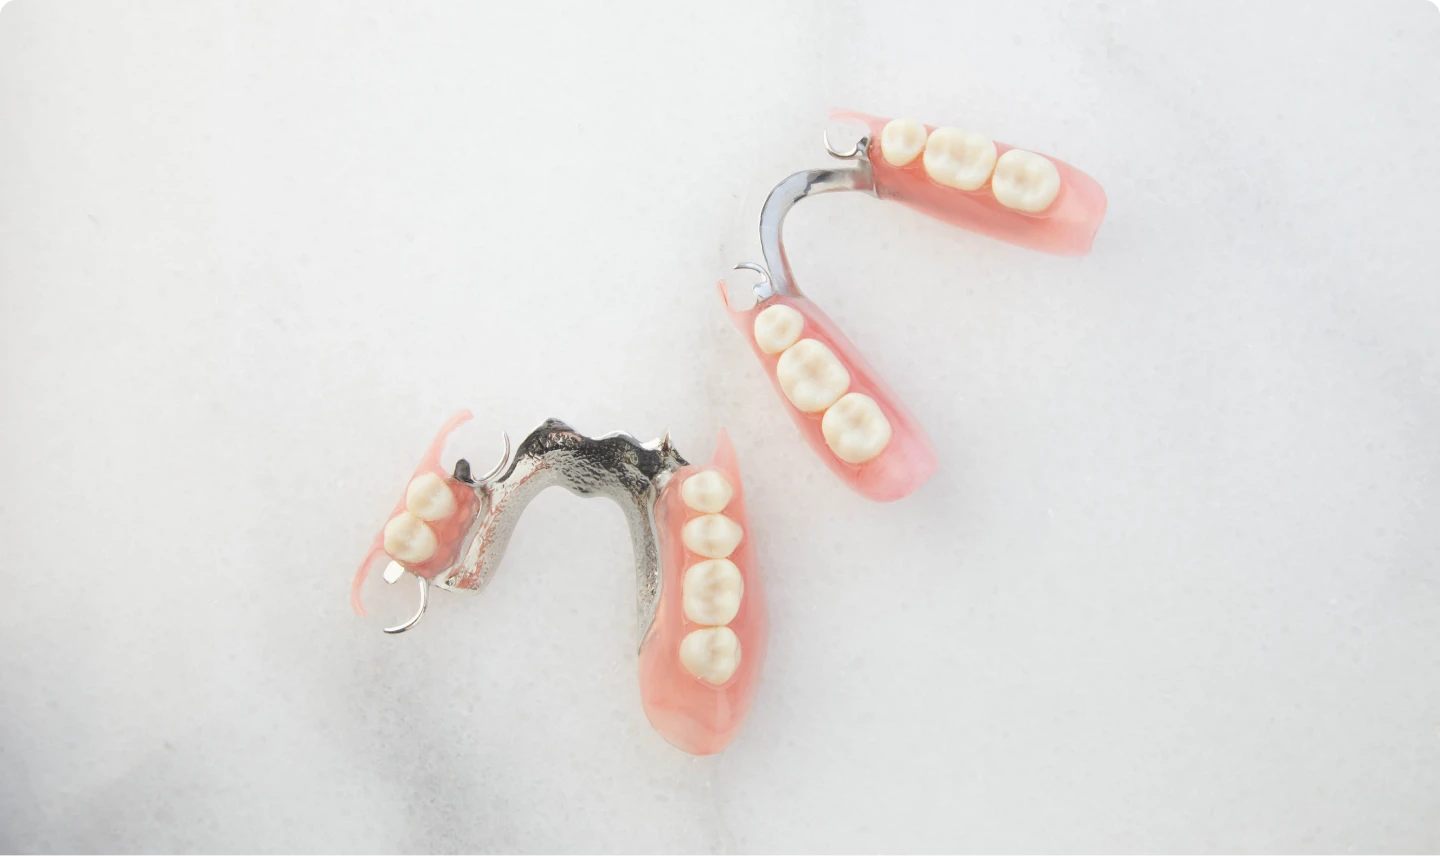 Aspen Dental Flexilytes Combo partial dentures. 